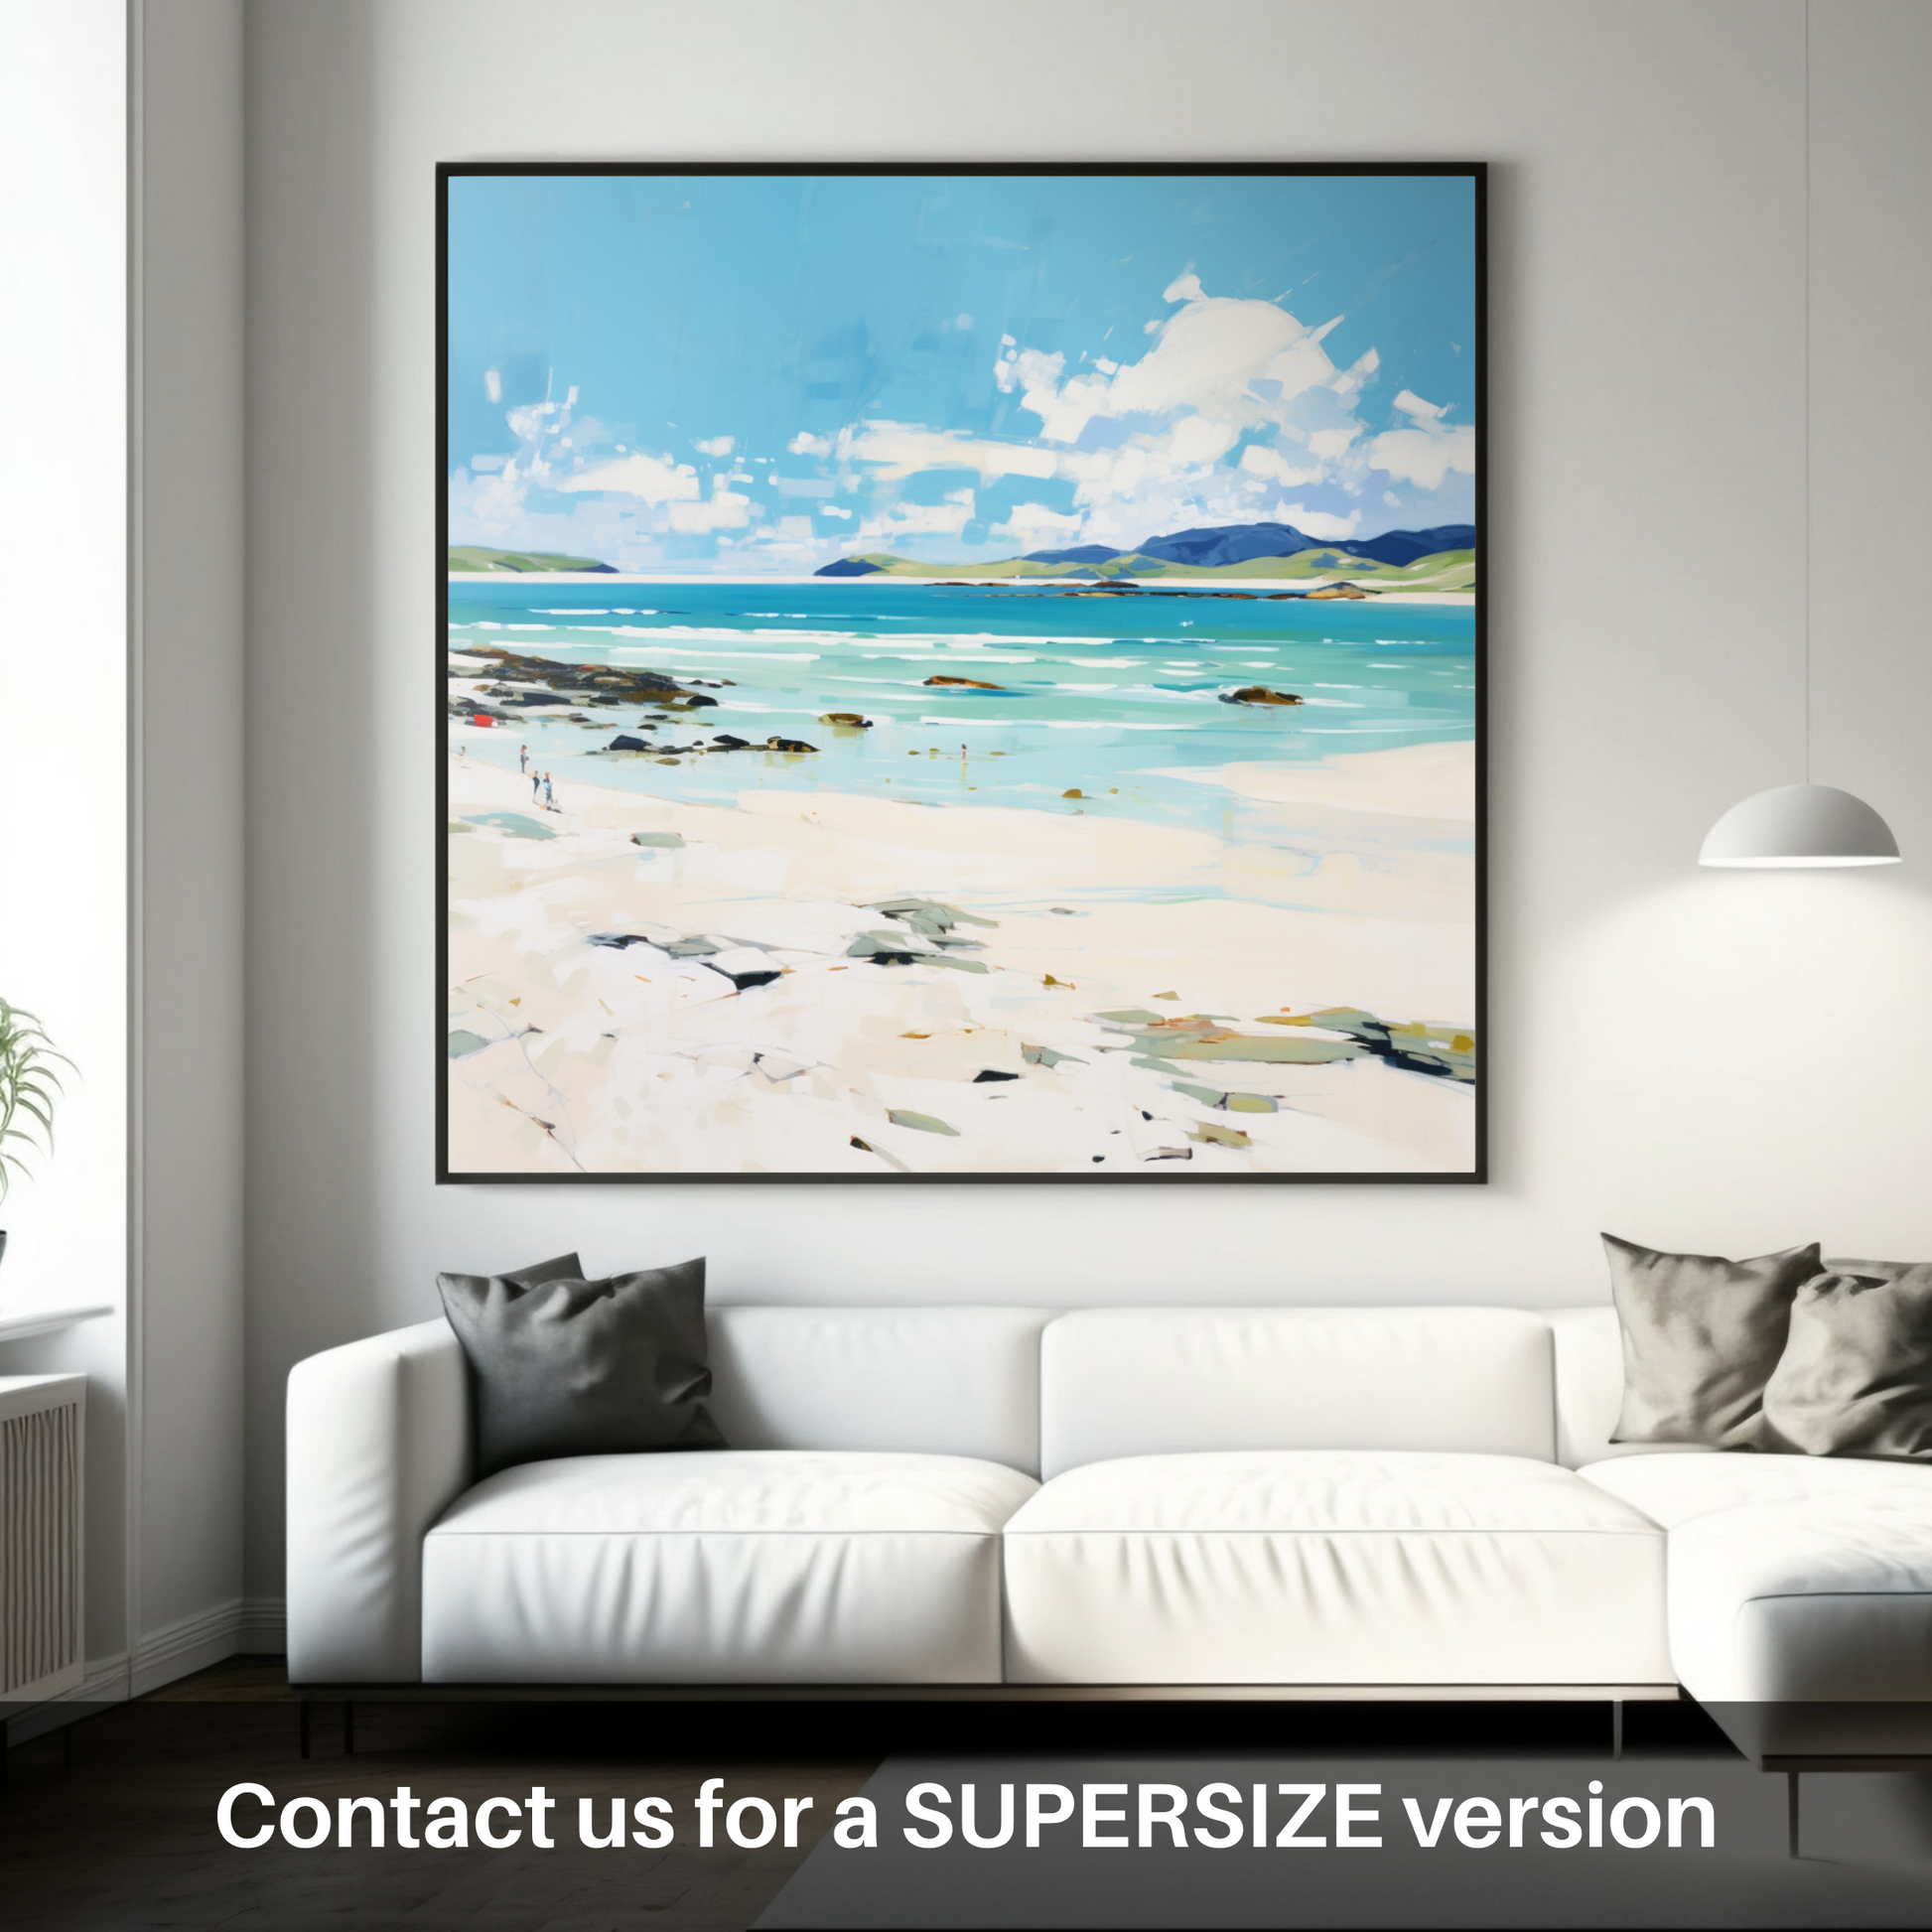 Huge supersize print of Luskentyre Beach, Isle of Harris in summer